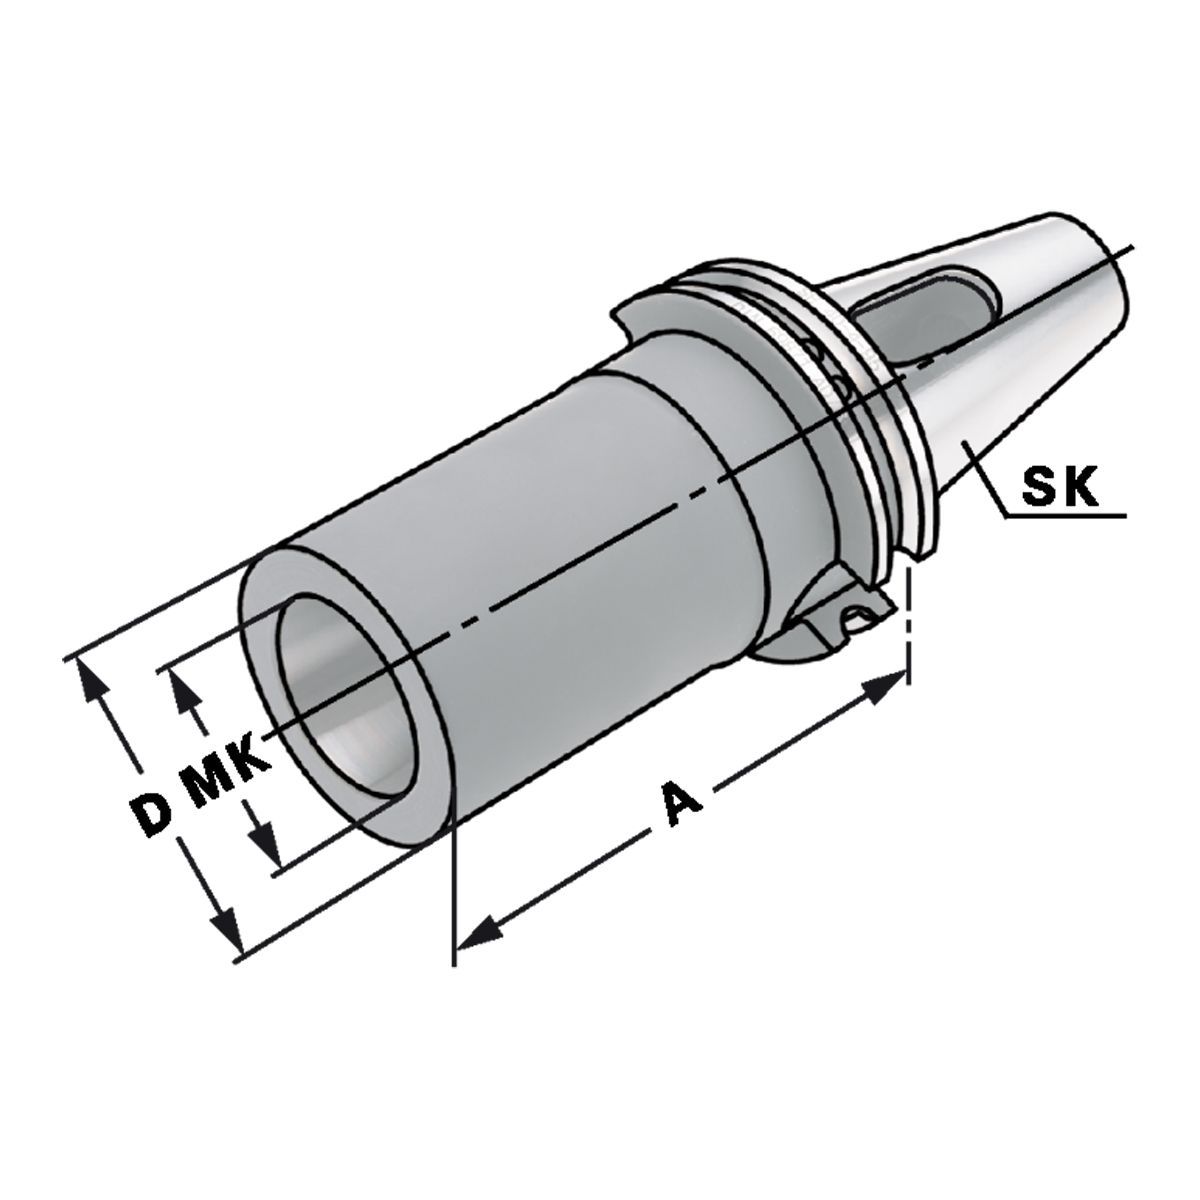 Zwischenhülse SK 40-2-50 für MK mit Austreiblappen DIN 6383